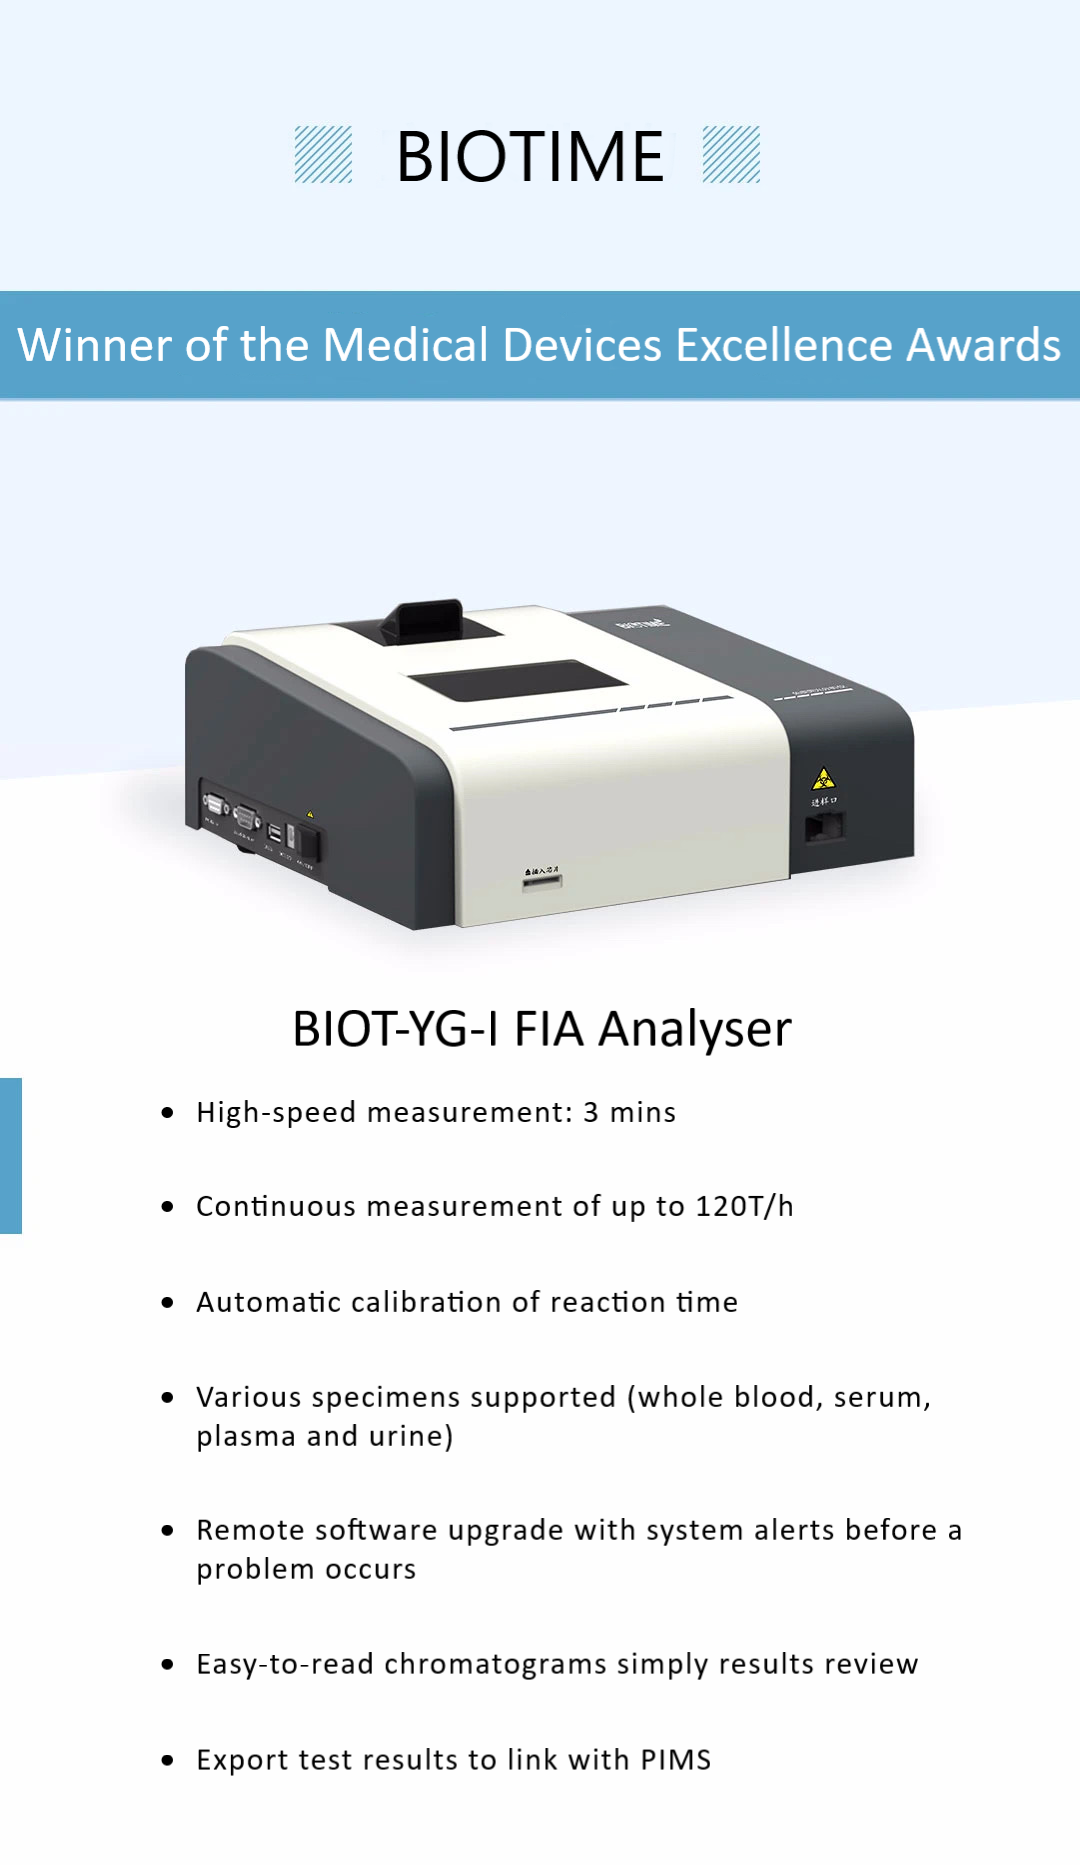 Biotime immunofluorescence analyzer BIOT-YG-I FIA Analyser